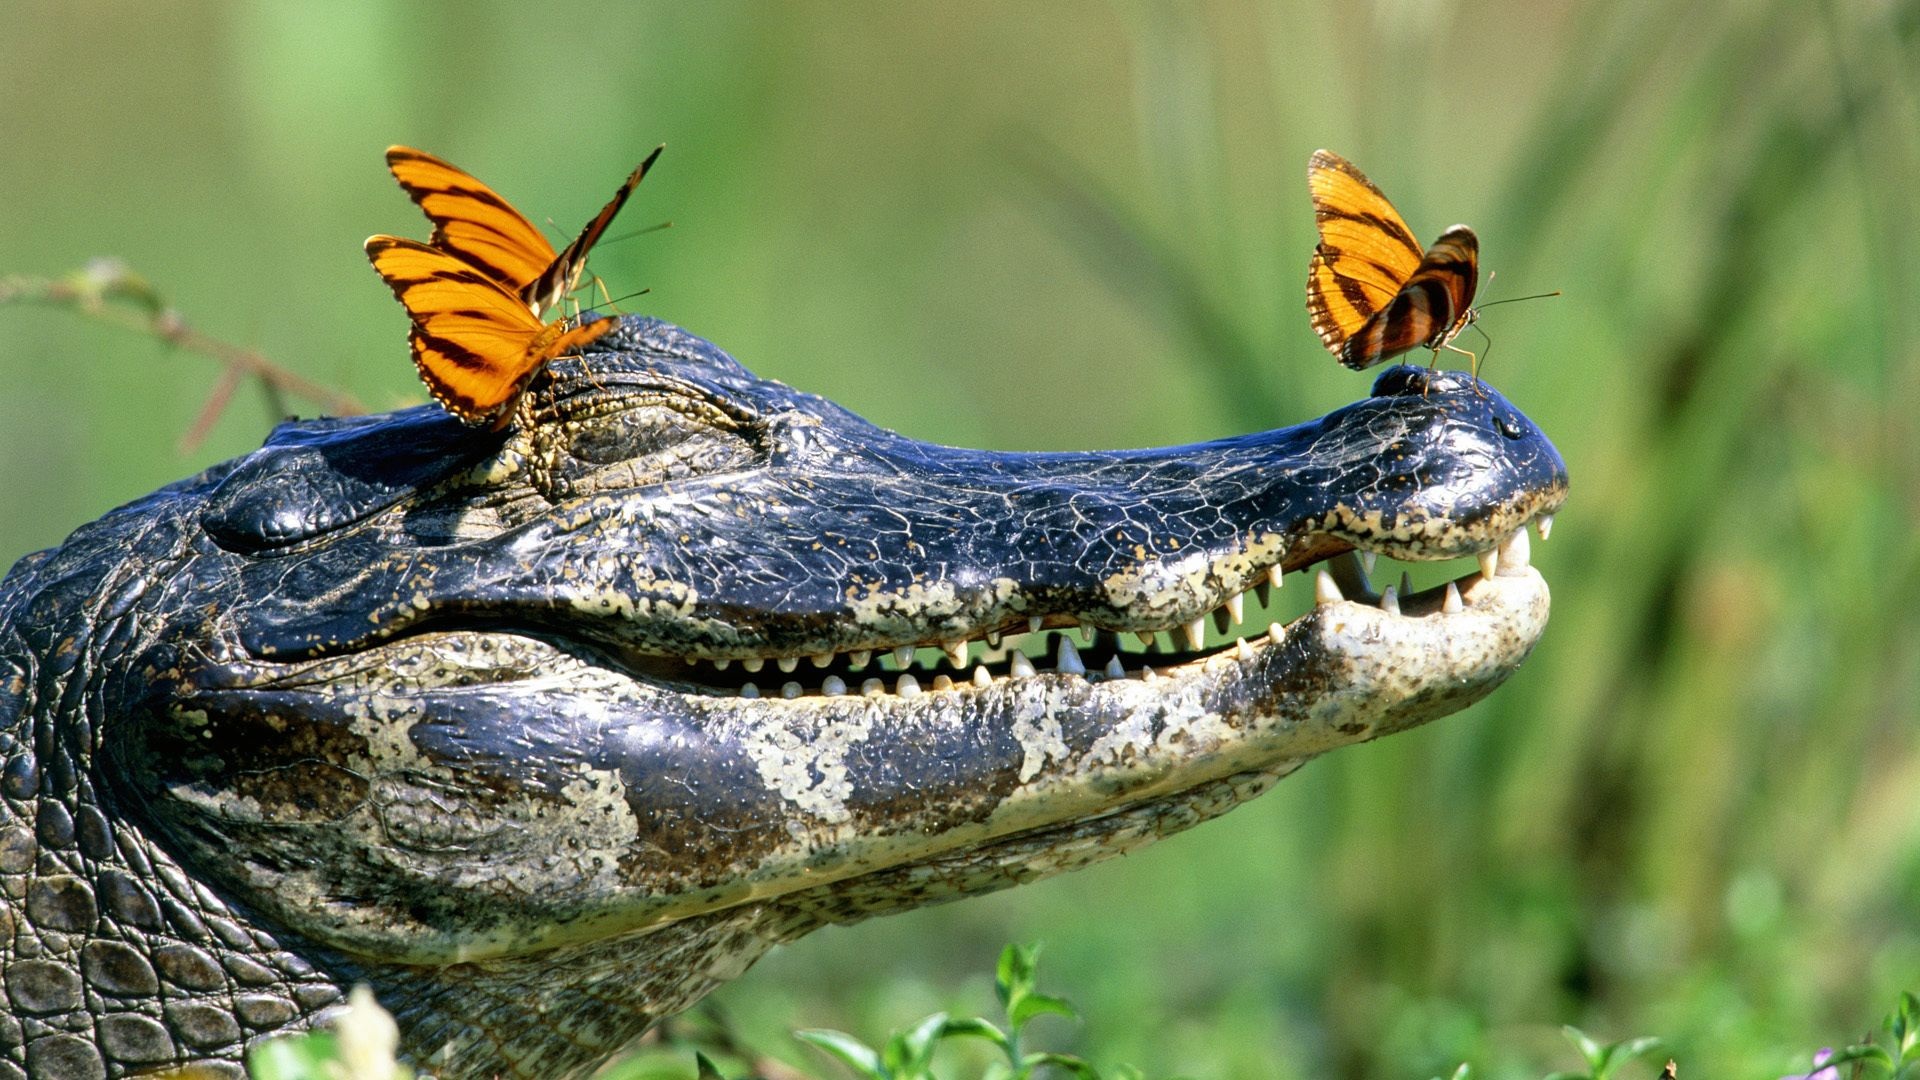 Скачать обои бесплатно Животные, Крокодил картинка на рабочий стол ПК